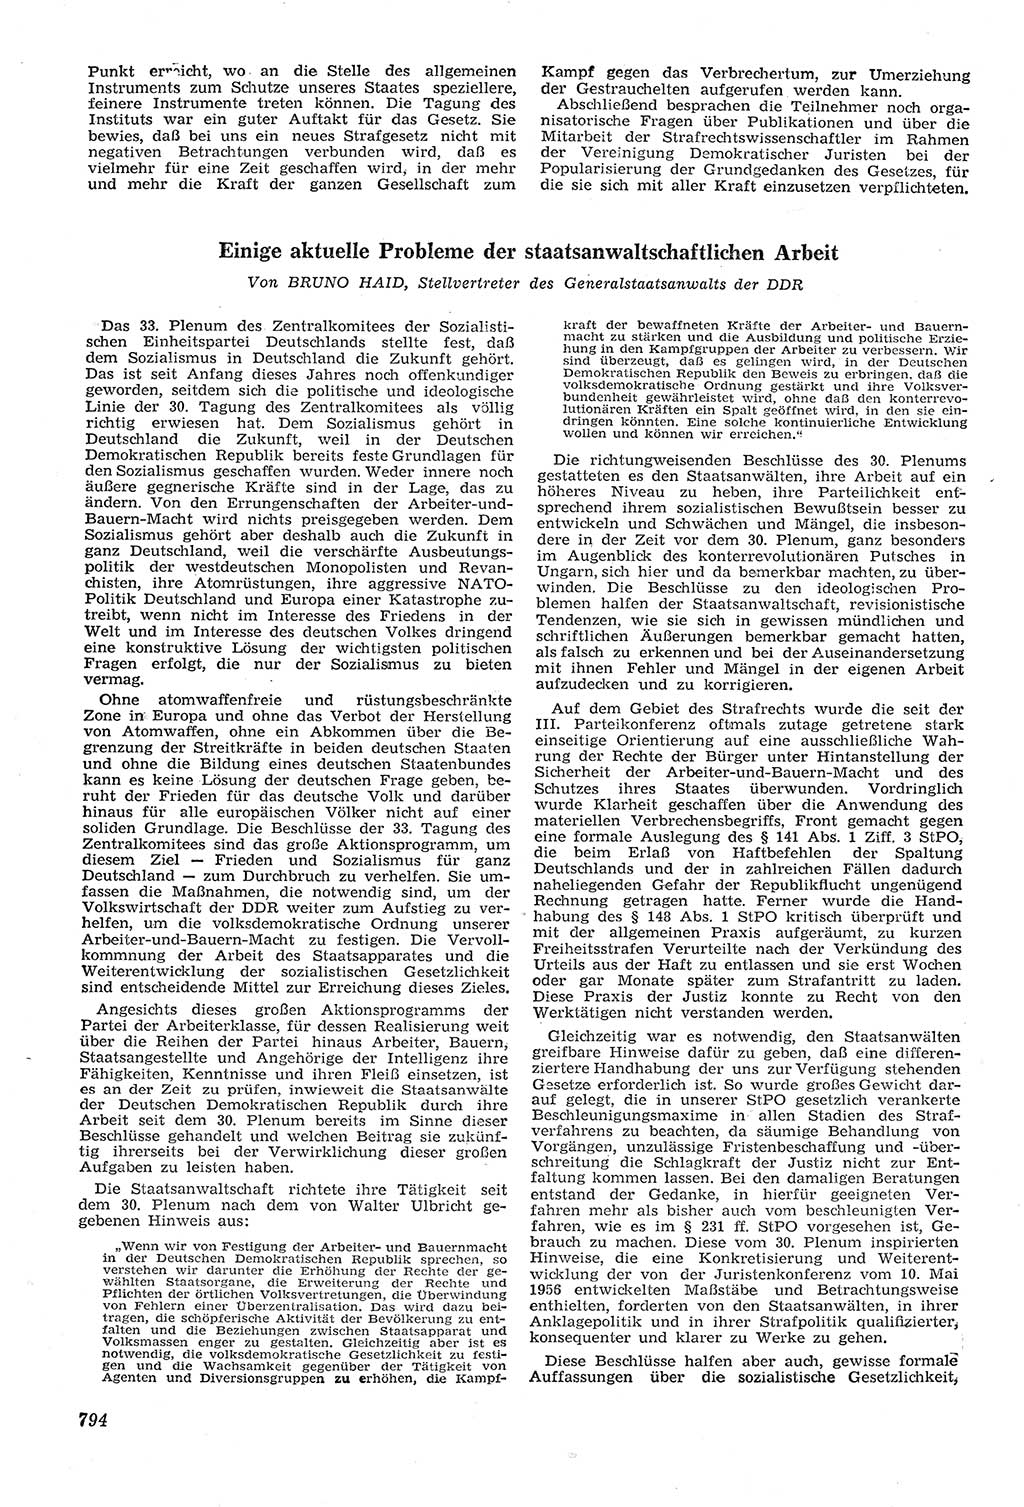 Neue Justiz (NJ), Zeitschrift für Recht und Rechtswissenschaft [Deutsche Demokratische Republik (DDR)], 11. Jahrgang 1957, Seite 794 (NJ DDR 1957, S. 794)